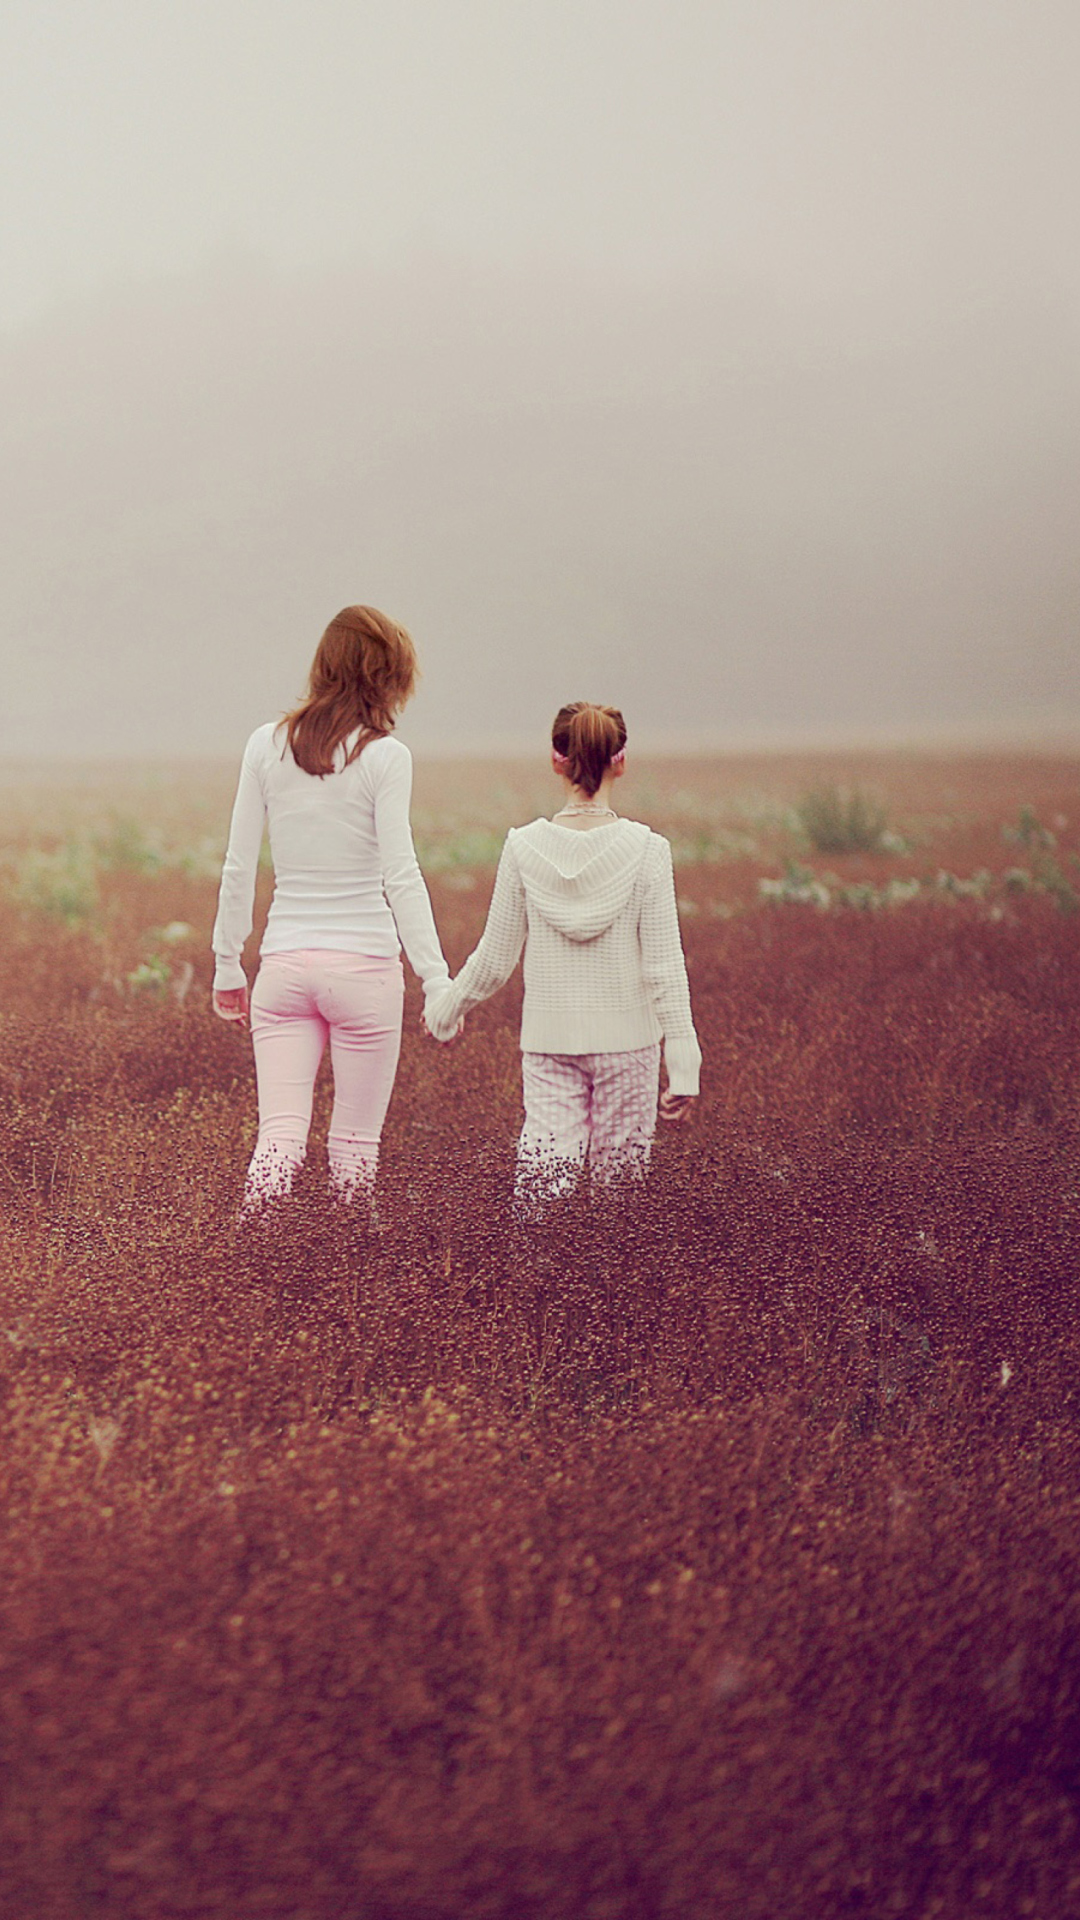 Das Two Girls Walking In The Field Wallpaper 1080x1920